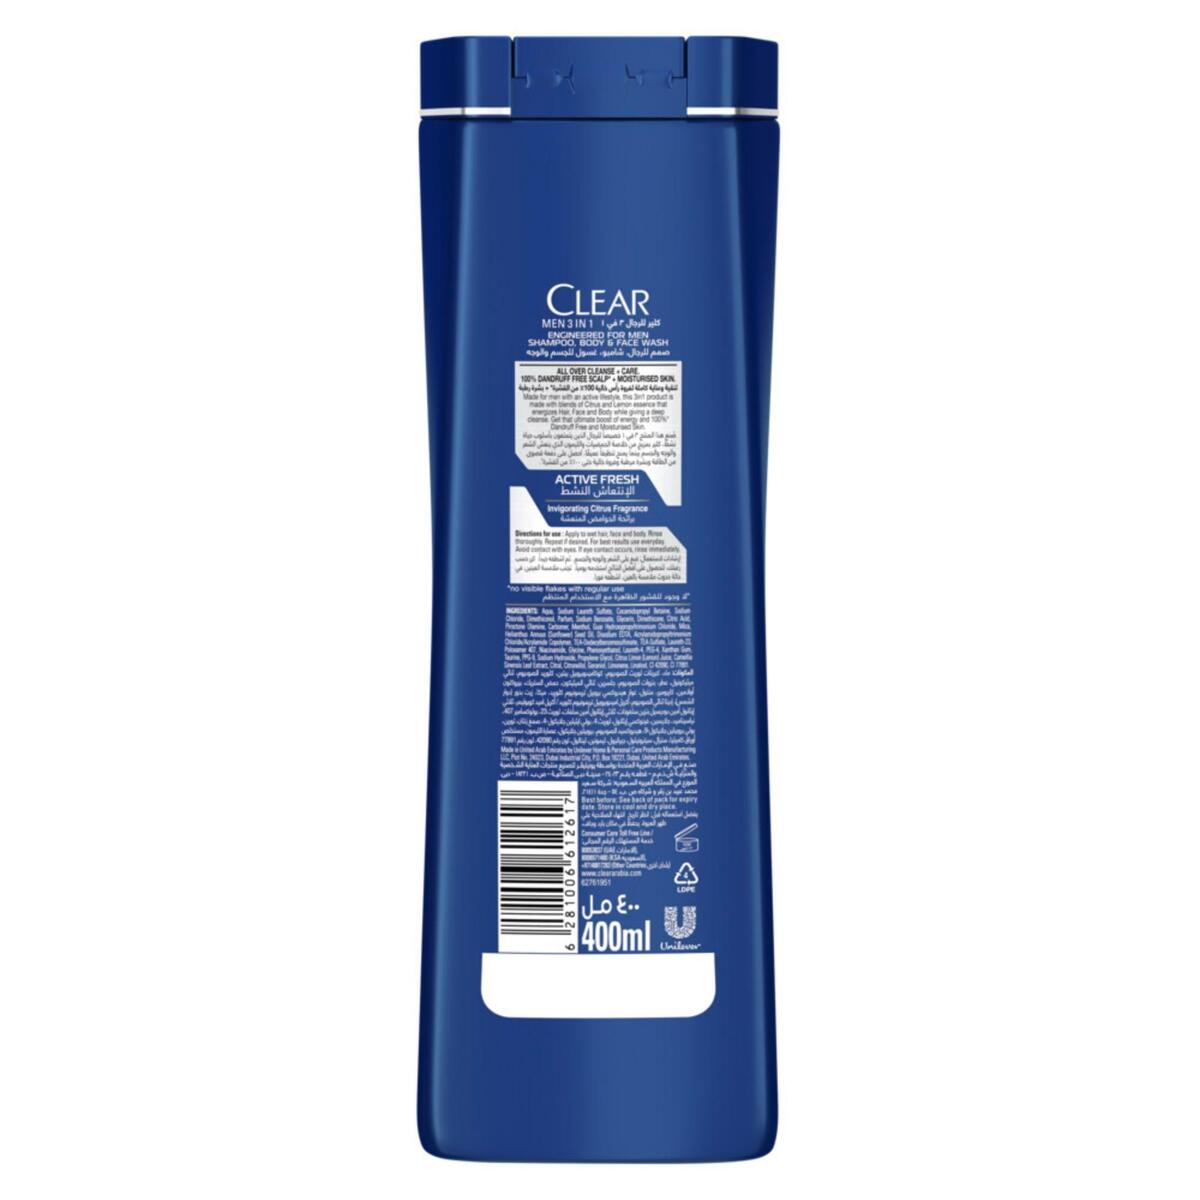 Clear Men 3in1 Active Fresh Shampoo, Body & Face Wash 400 ml